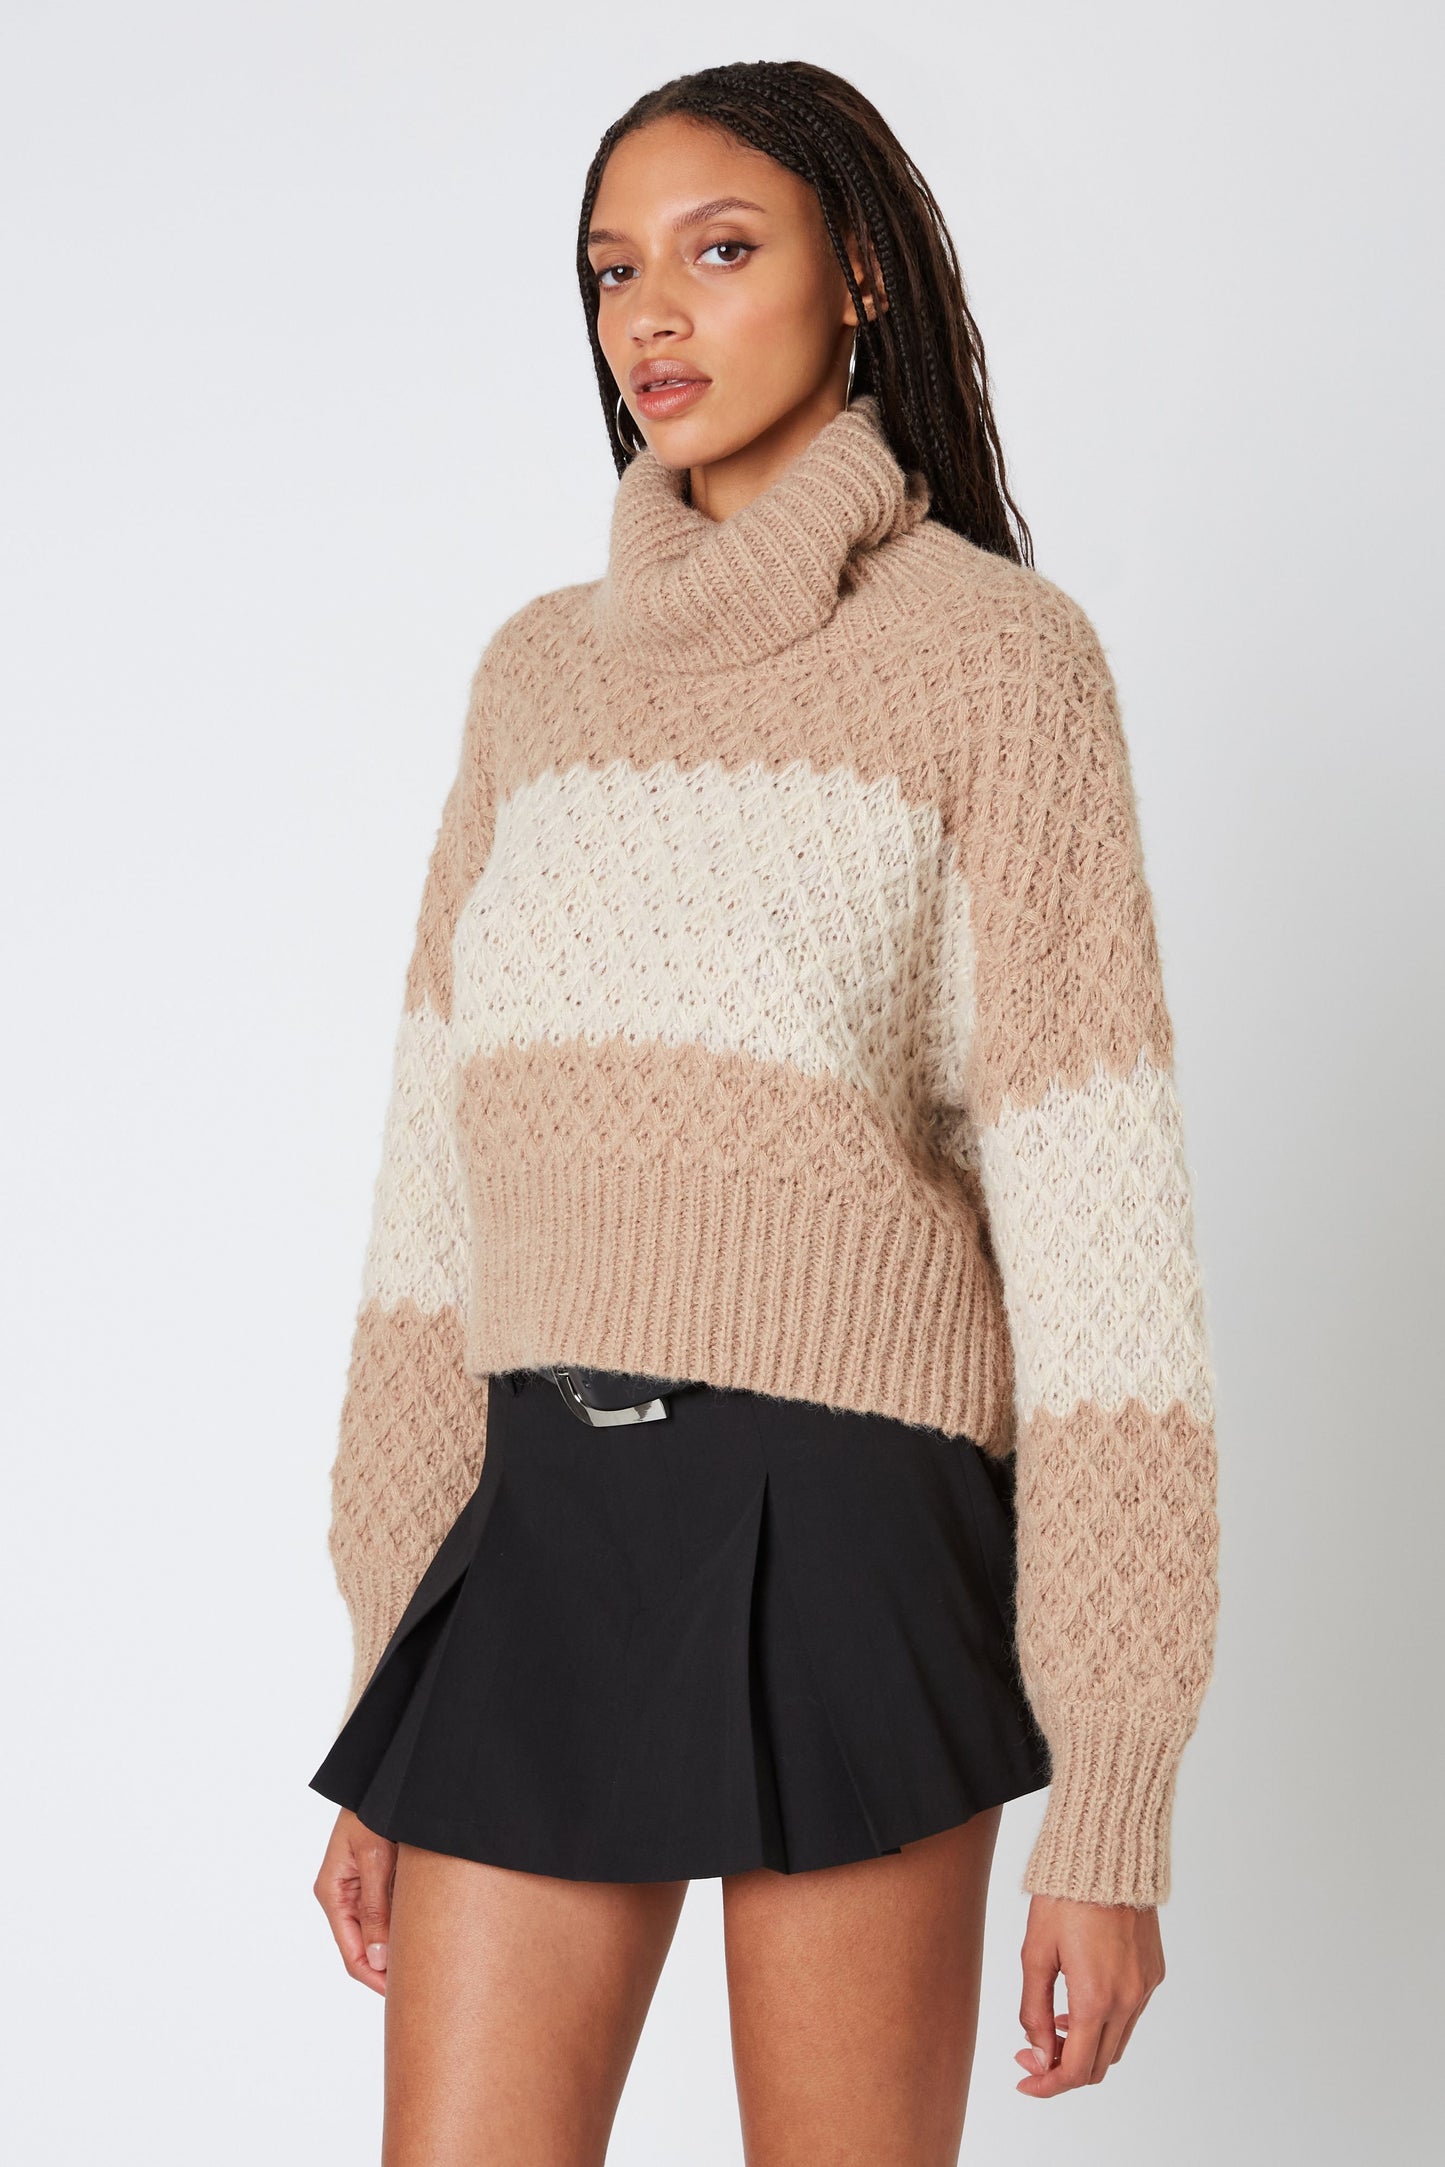 Faith Sweater